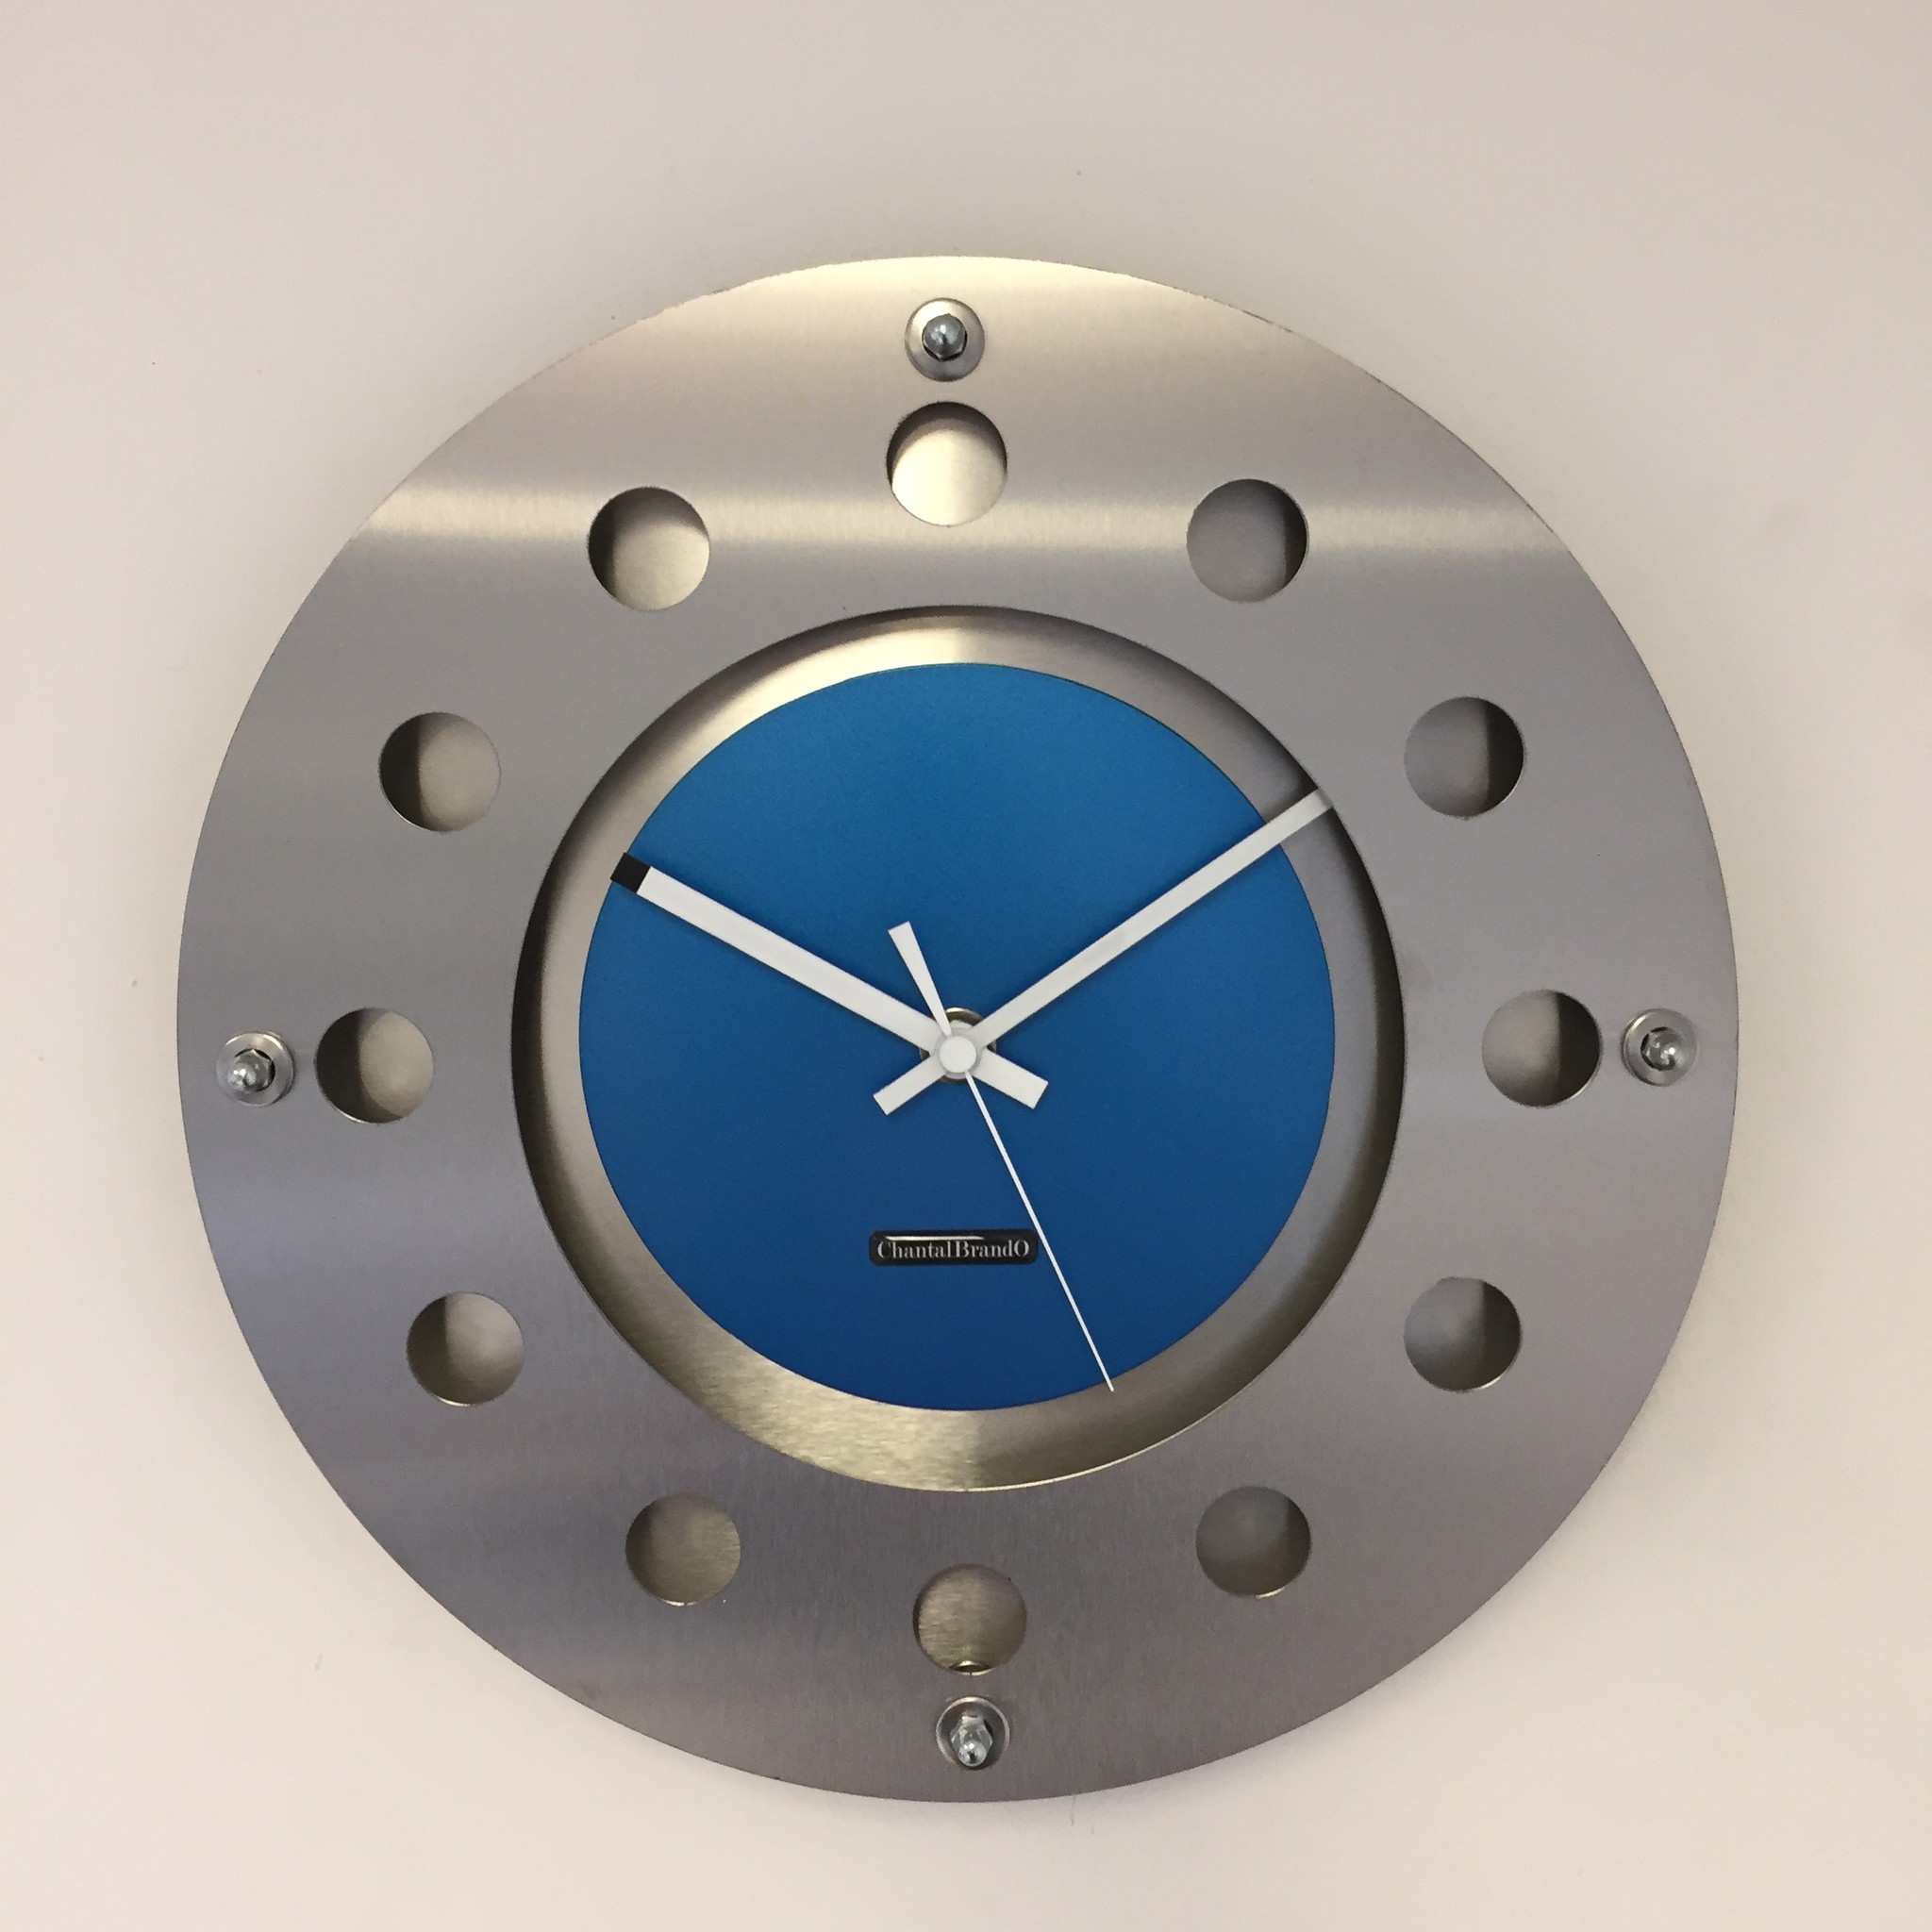 ChantalBrandO Design - Wandklok mecanica kleine binnenste cirkel lichtblauw wit modern nederlands ontwerp handgemaakt 40 cm